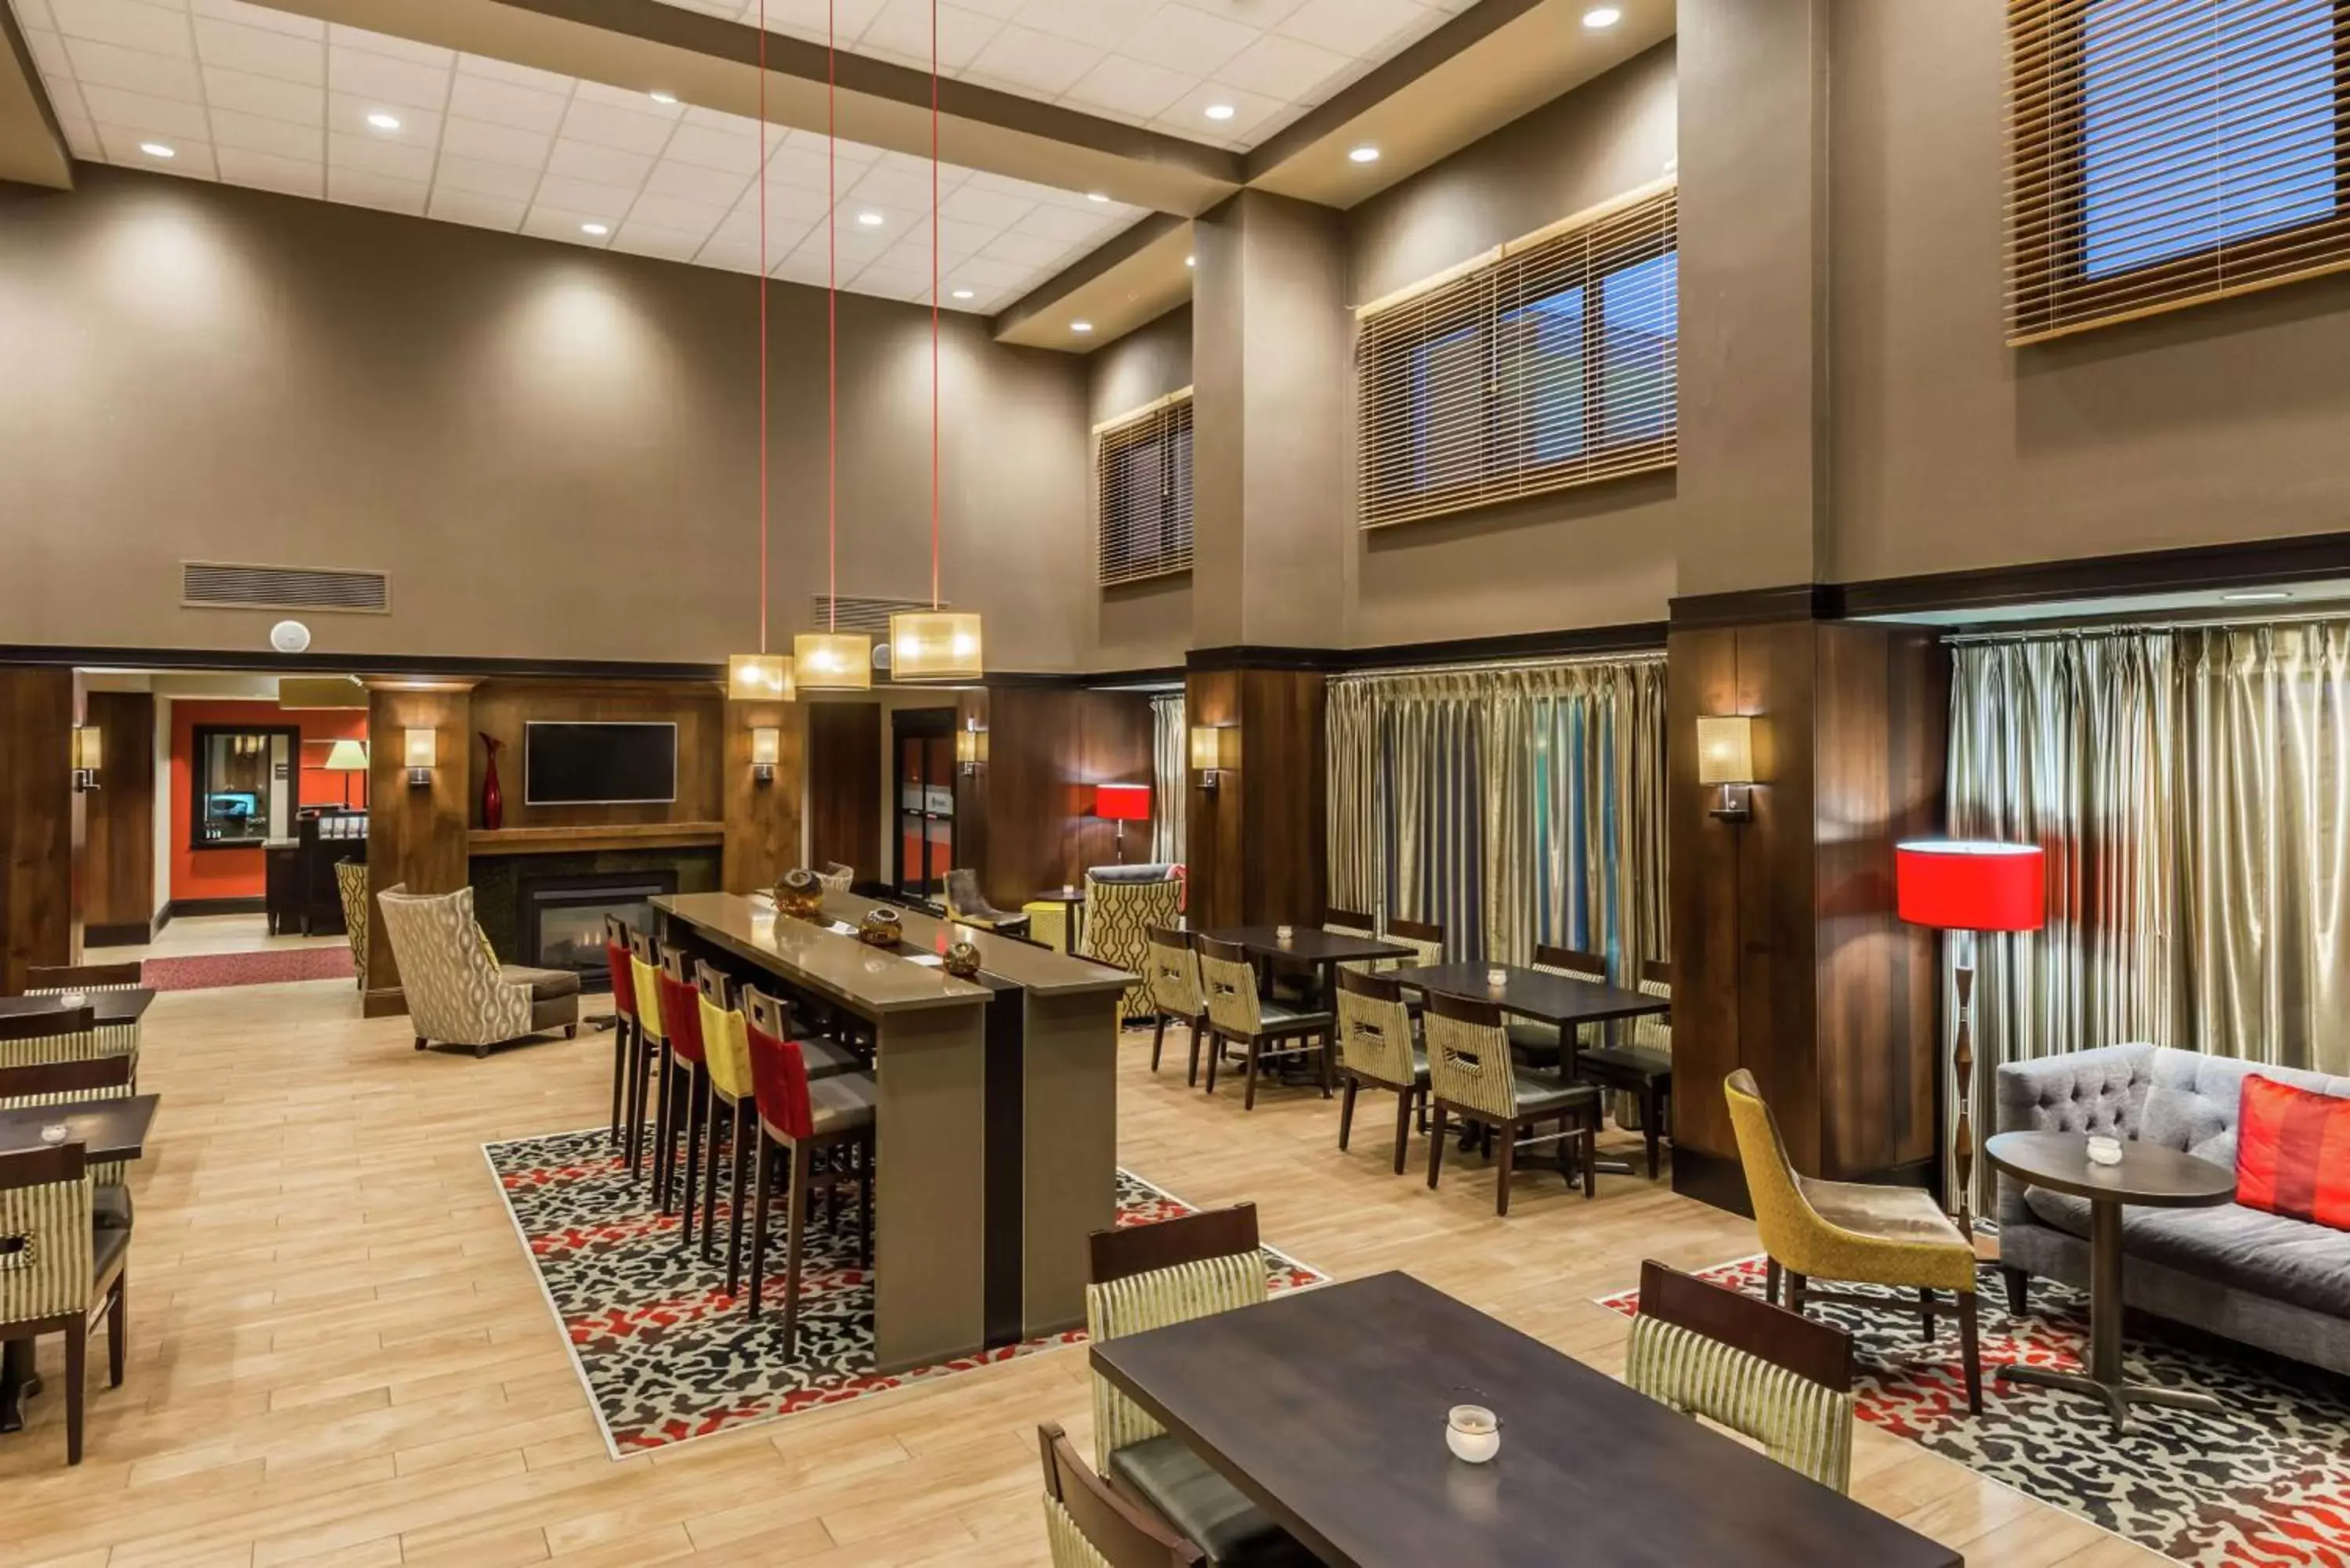 Lobby or reception, Restaurant/Places to Eat in Hampton Inn & Suites Columbus Polaris